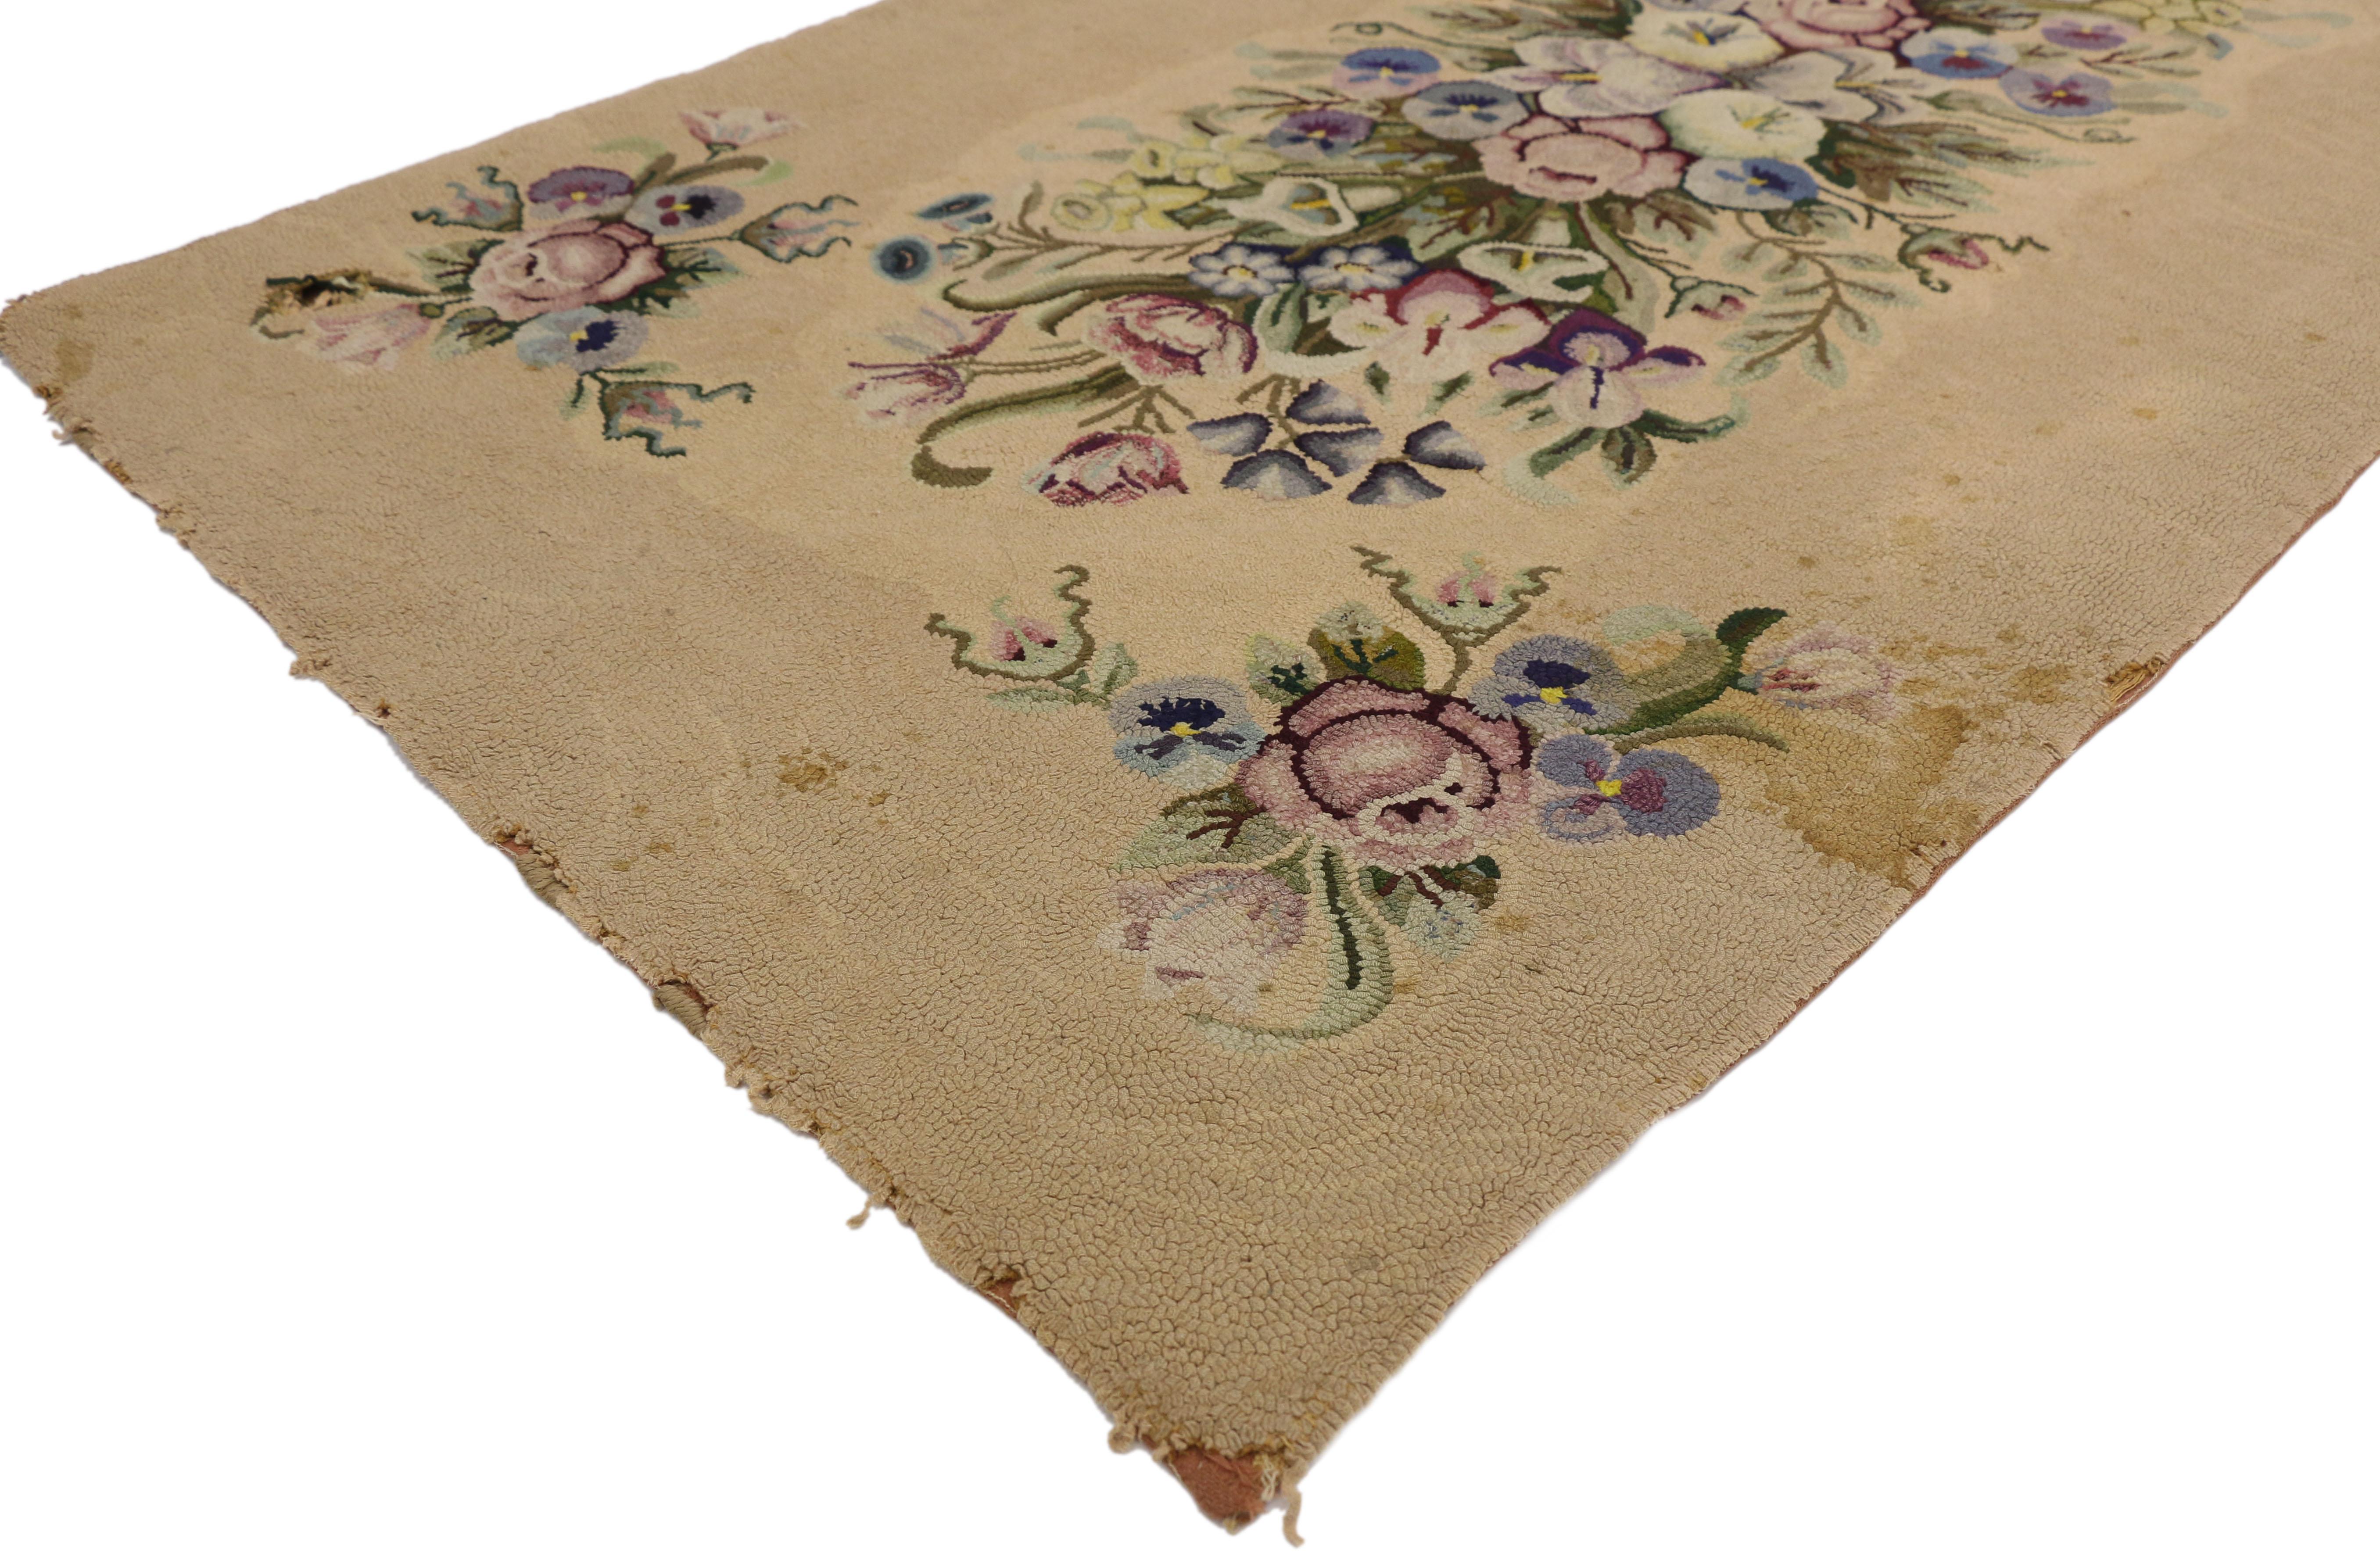 74344 Antique tapis américain crocheté de style Aubusson français. Cet ancien tapis américain crocheté à la main dans le style Aubusson français présente un bouquet floral décoratif d'hiver et de printemps composé d'anthuriums blancs, de pensées, de